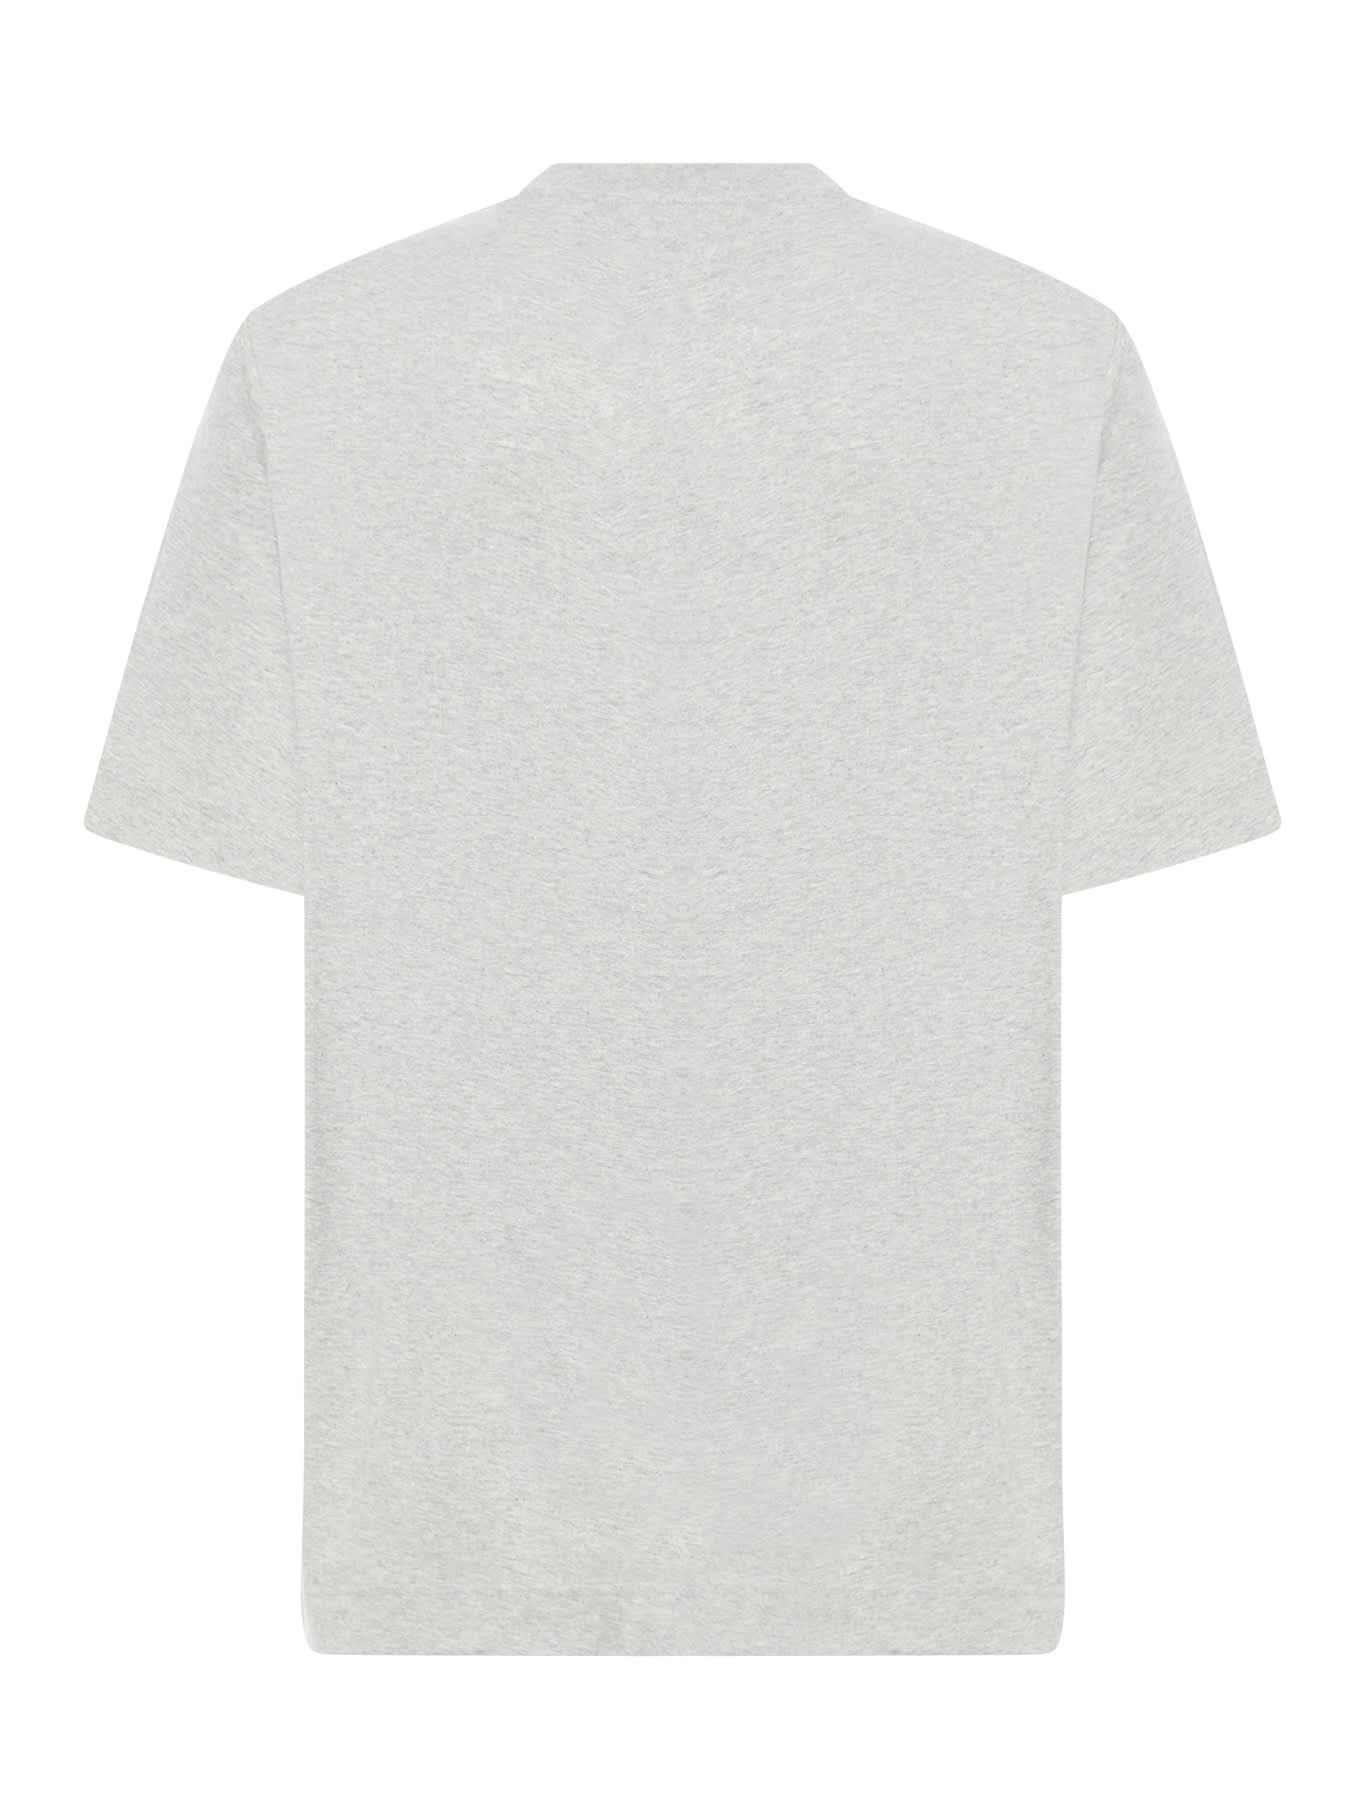 Shop Givenchy New Studio Fit T-shirt In Light Grey Melange